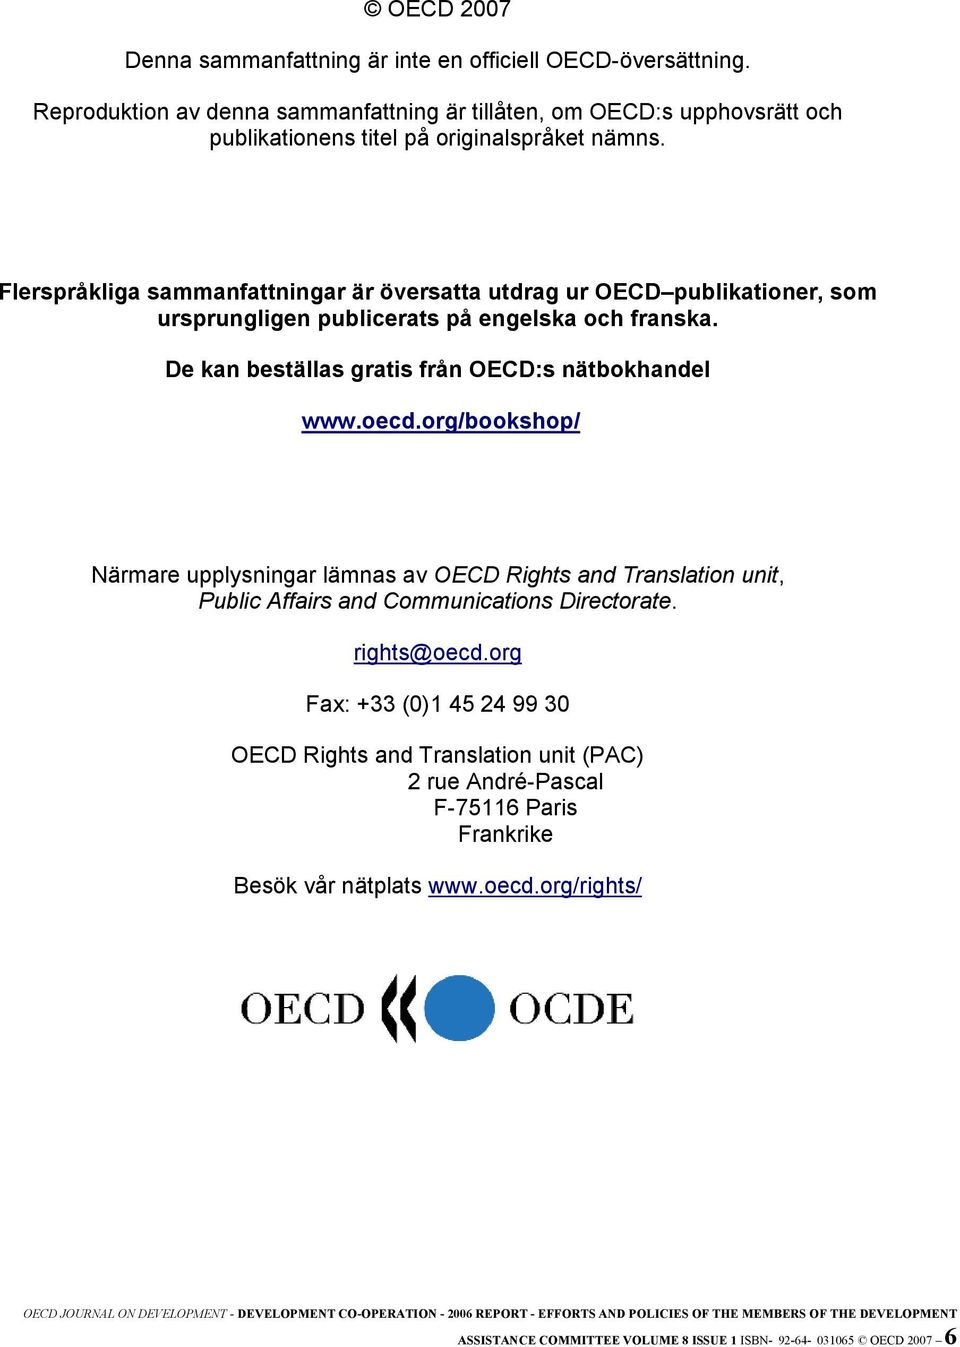 Flerspråkliga sammanfattningar är översatta utdrag ur OECD publikationer, som ursprungligen publicerats på engelska och franska. De kan beställas gratis från OECD:s nätbokhandel www.